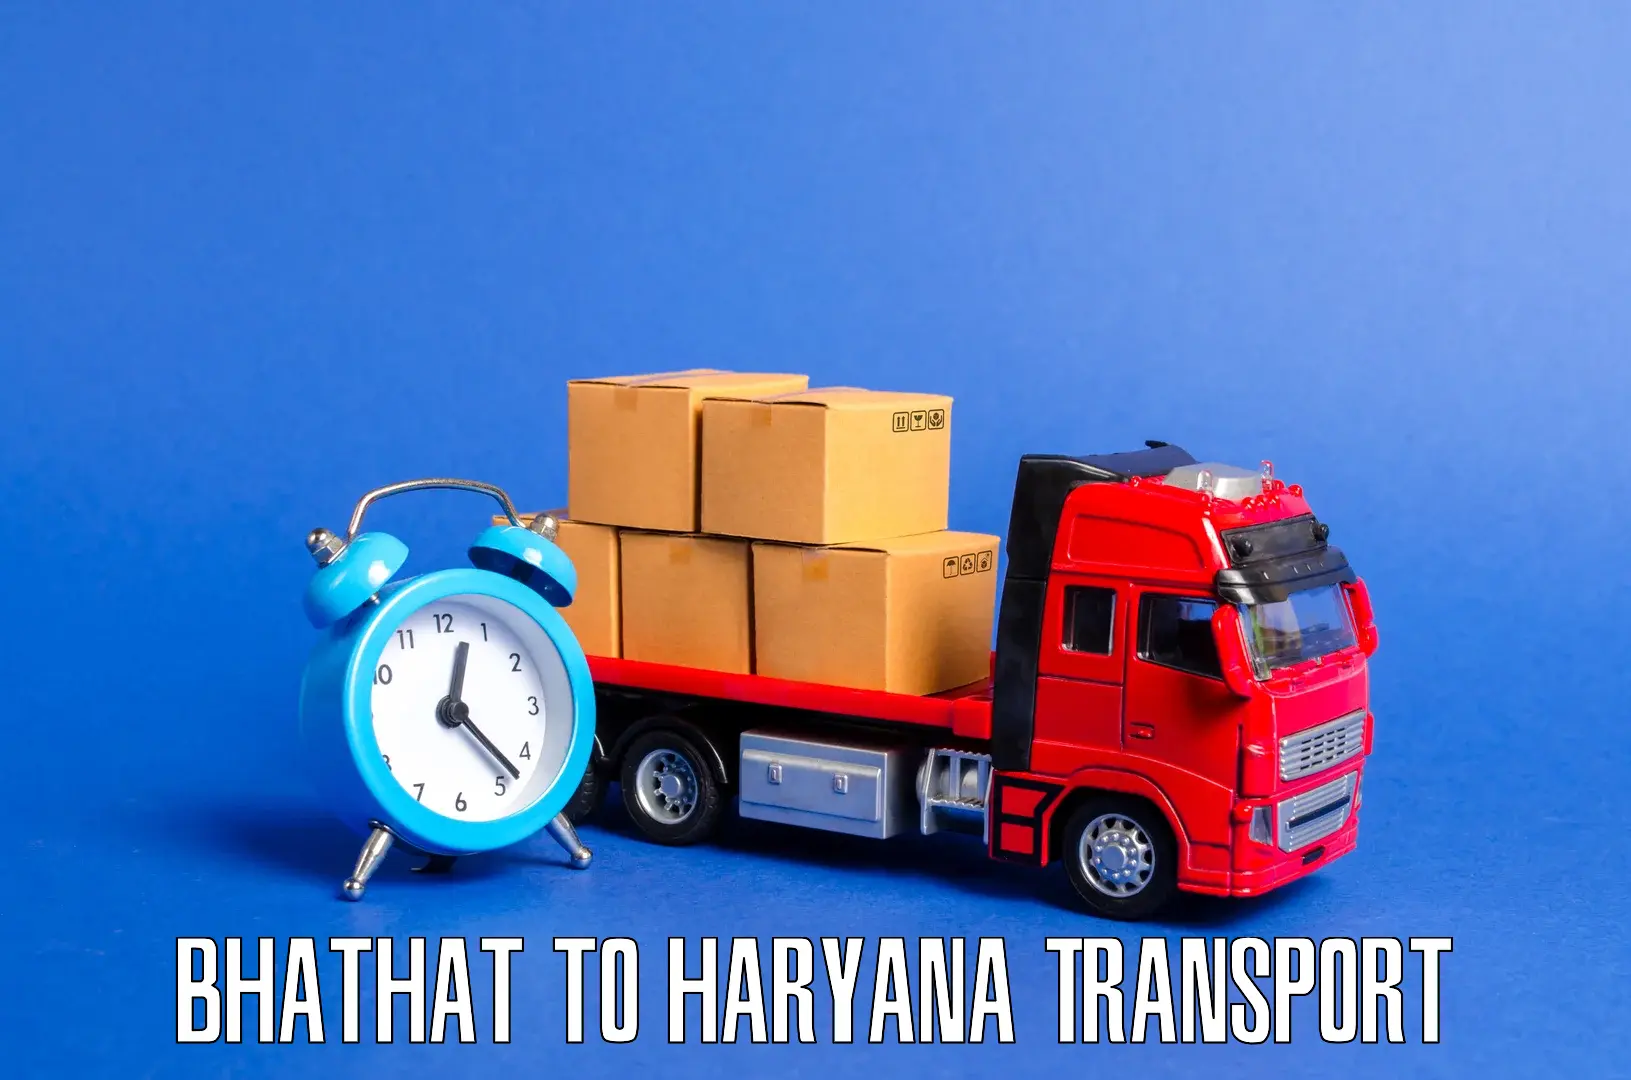 Nationwide transport services Bhathat to Rewari